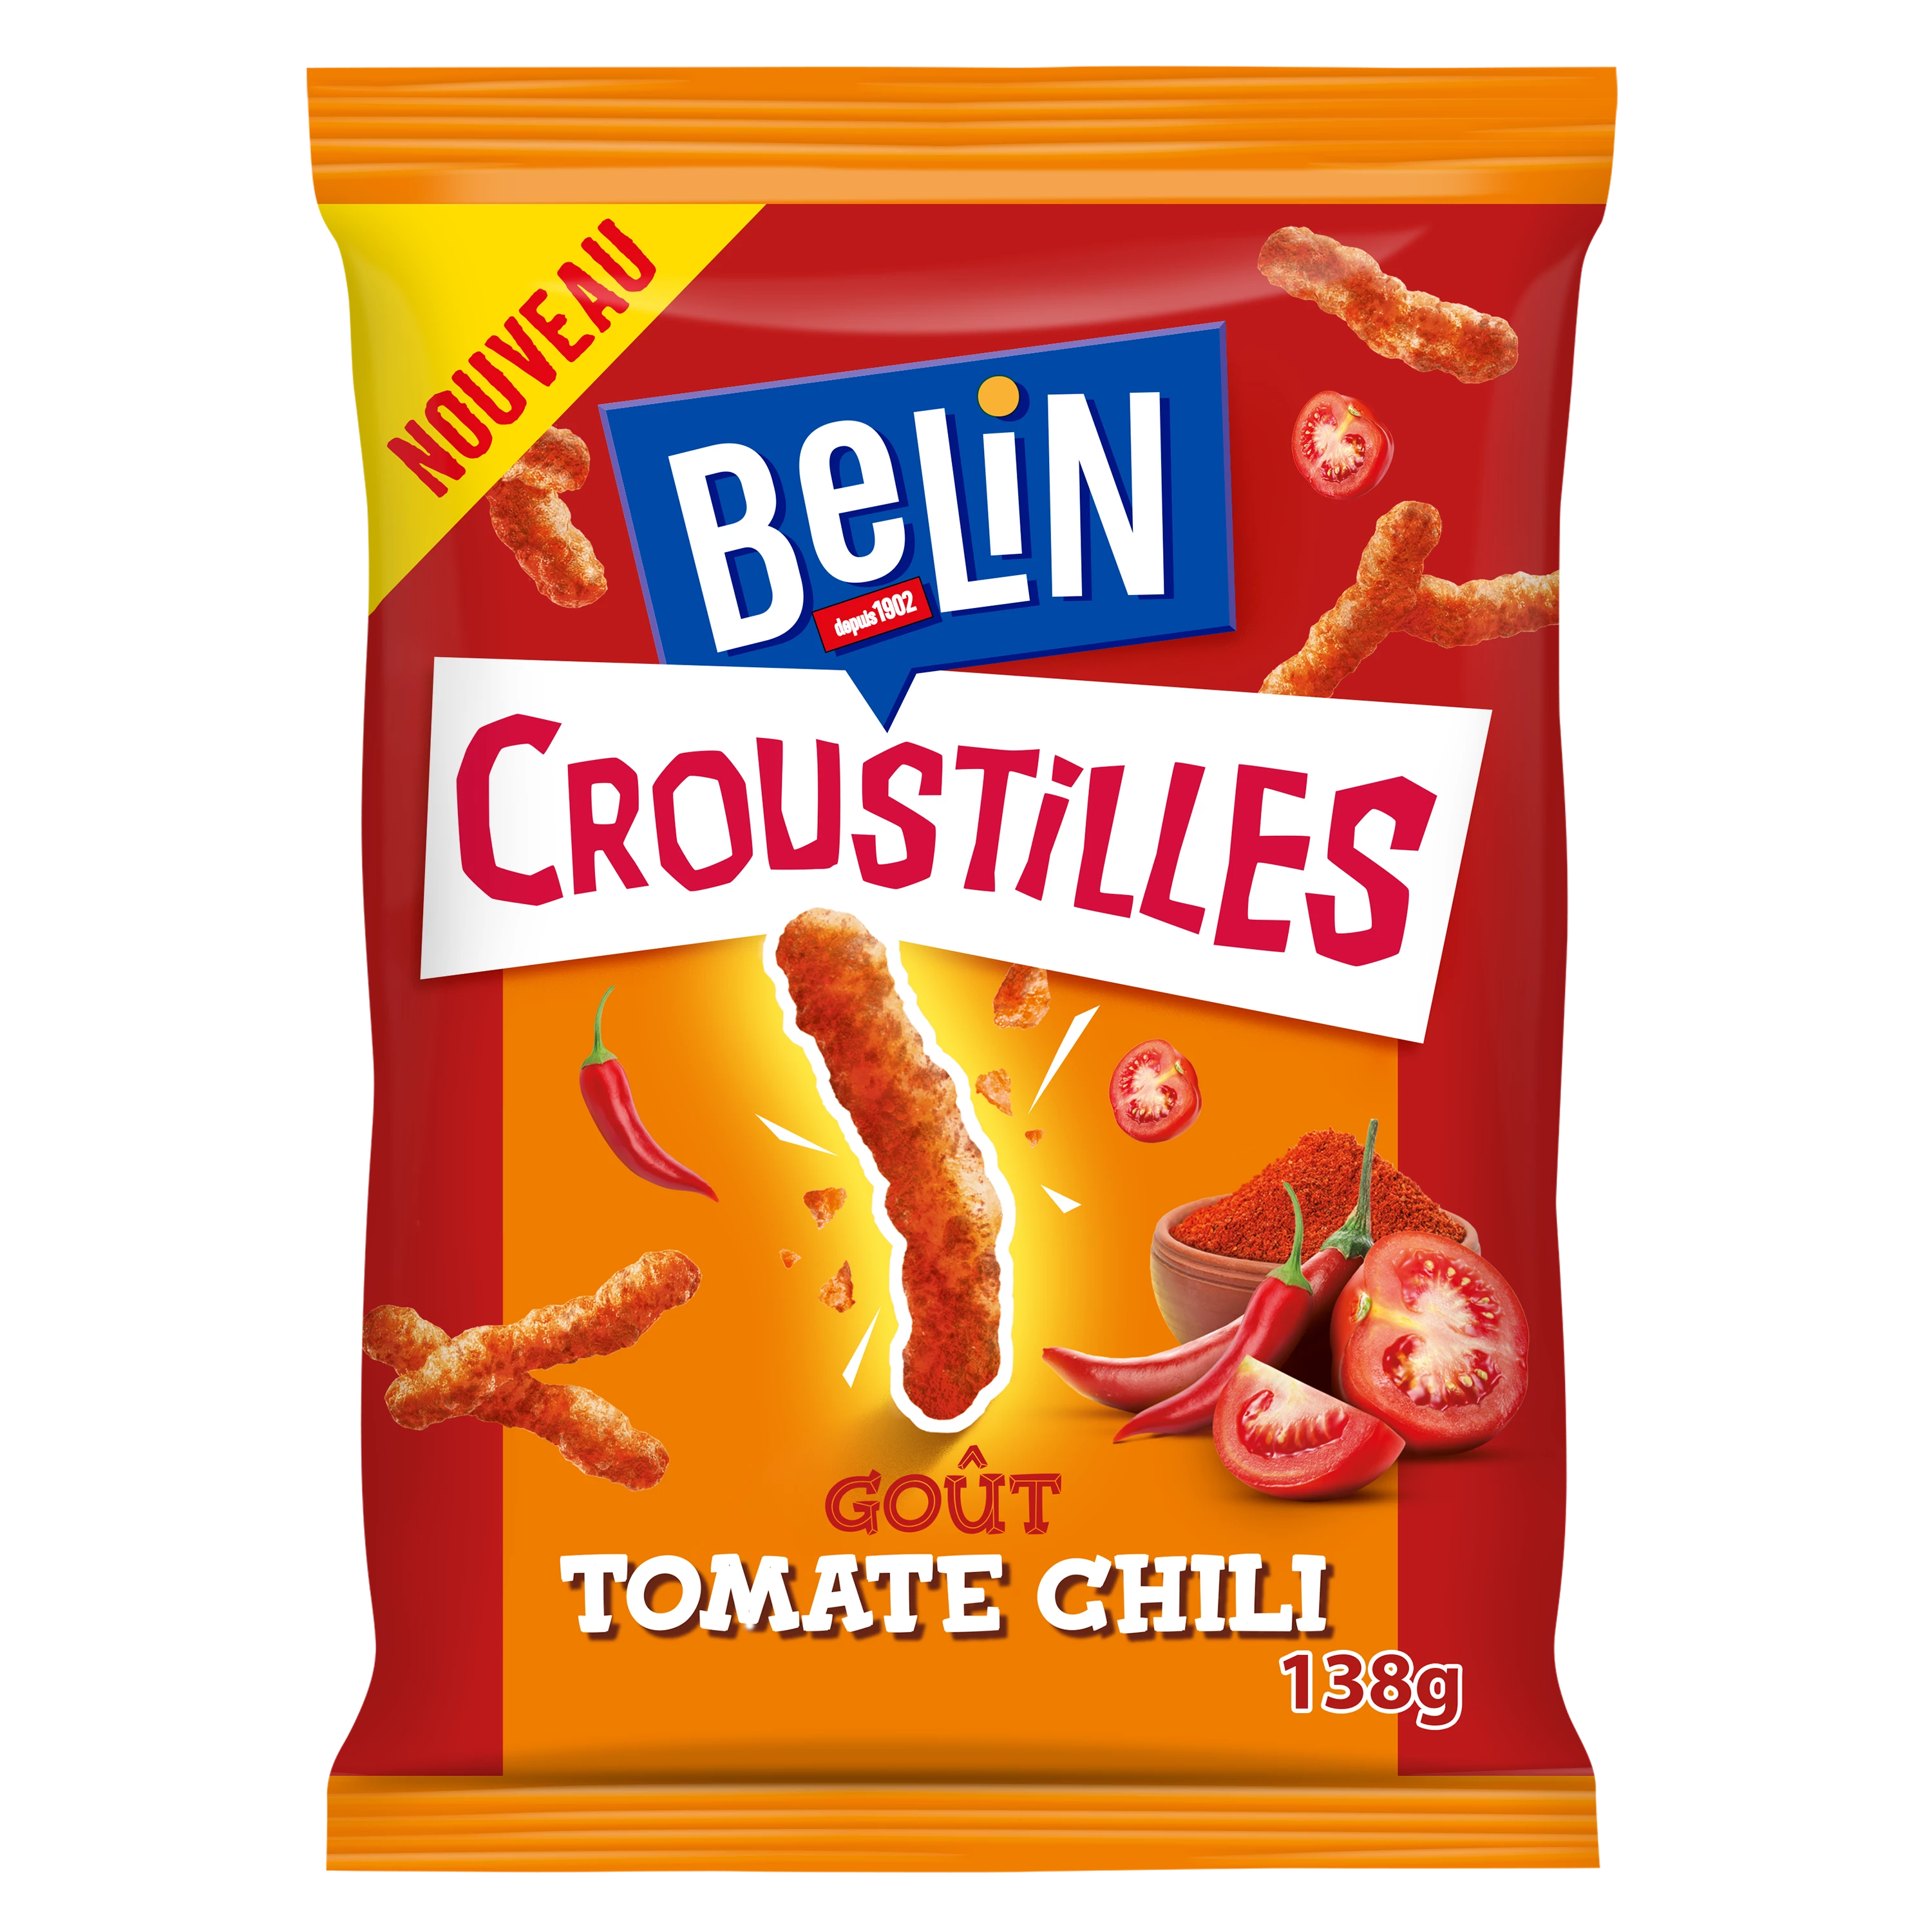 Tomato Chili Chips, 138g - BELIN